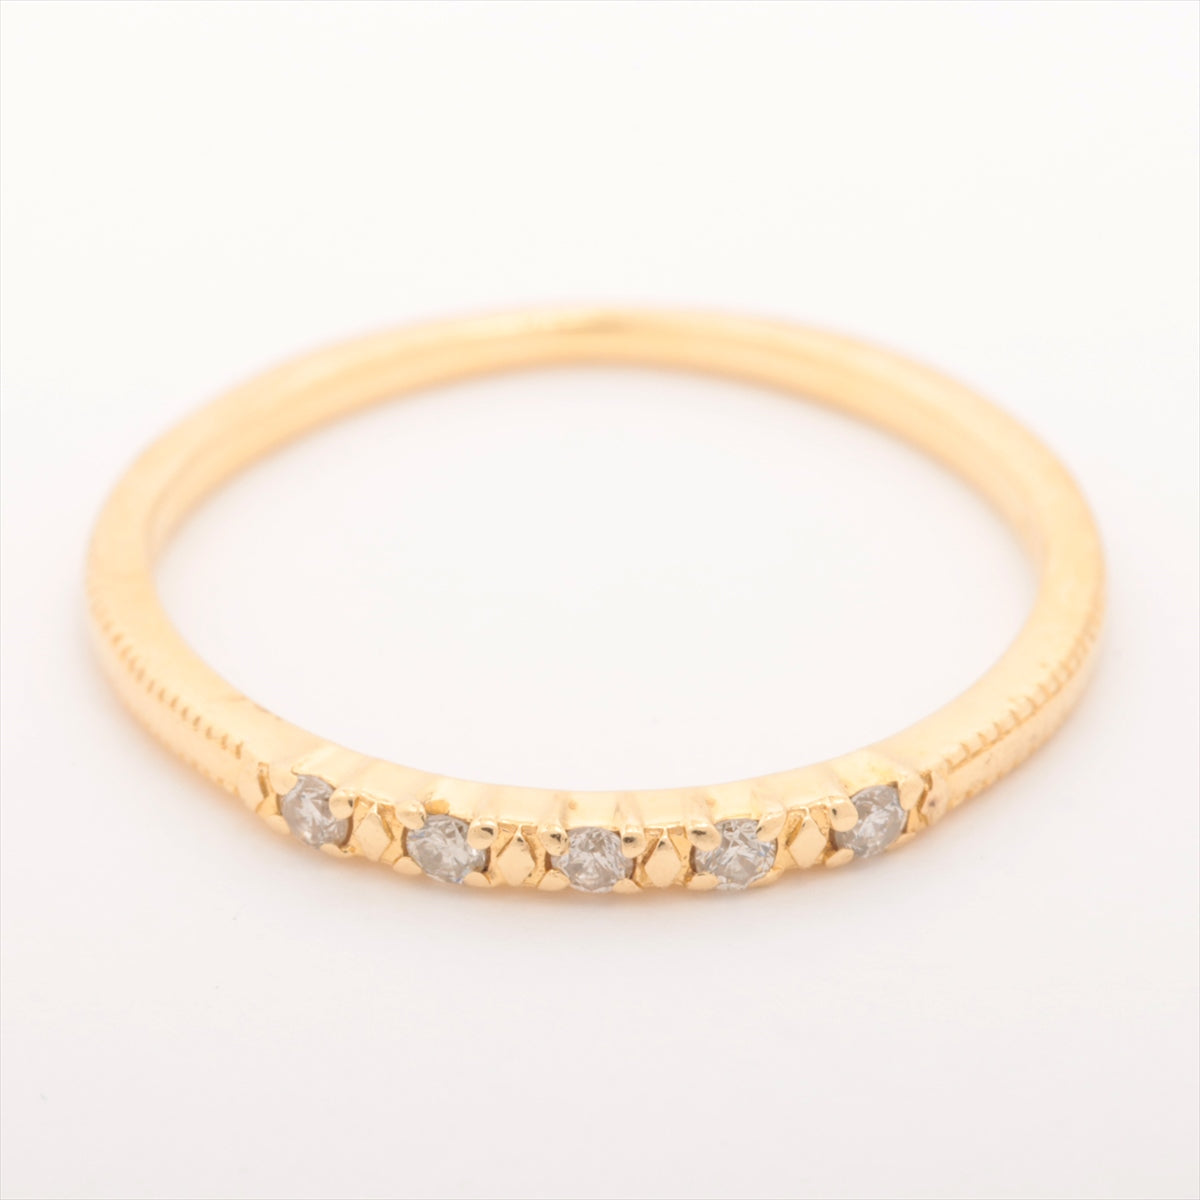 Agat Diamond Ring K18 (YG) 0.9g 0.05 E